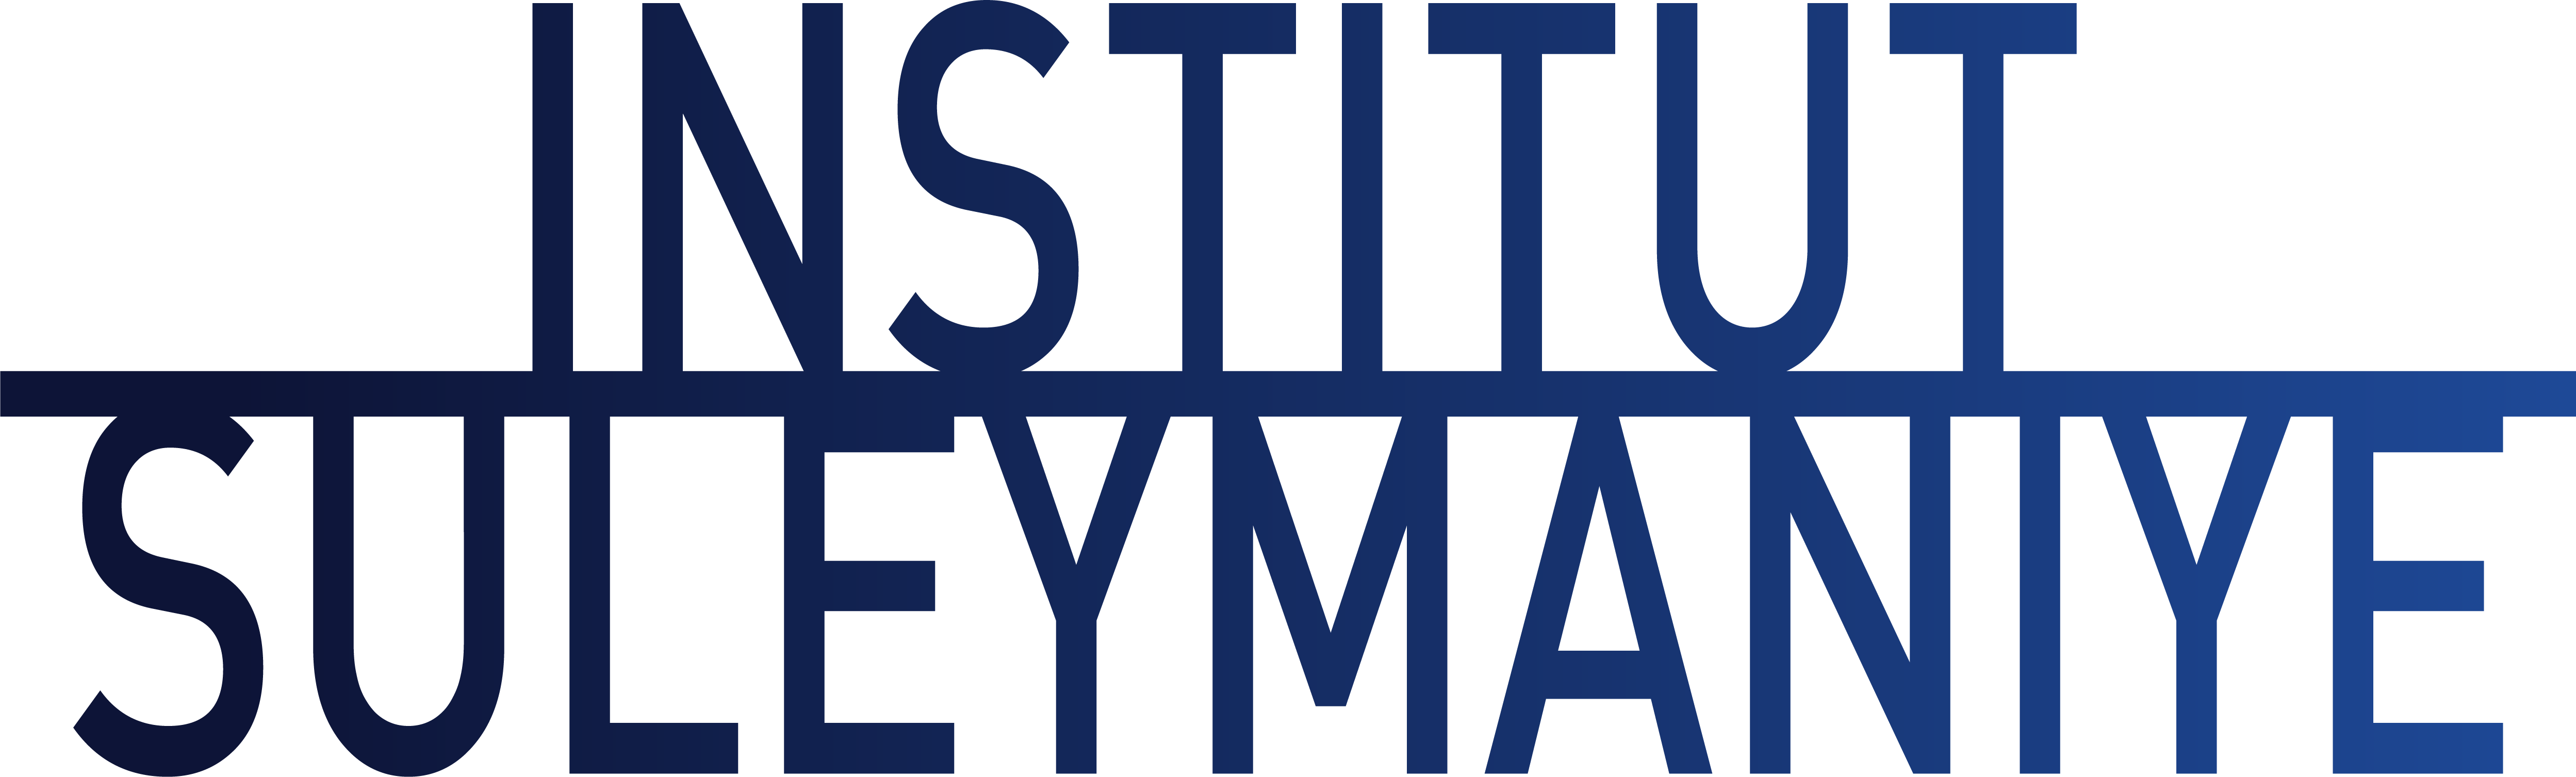 Institut Suleymaniye Logo